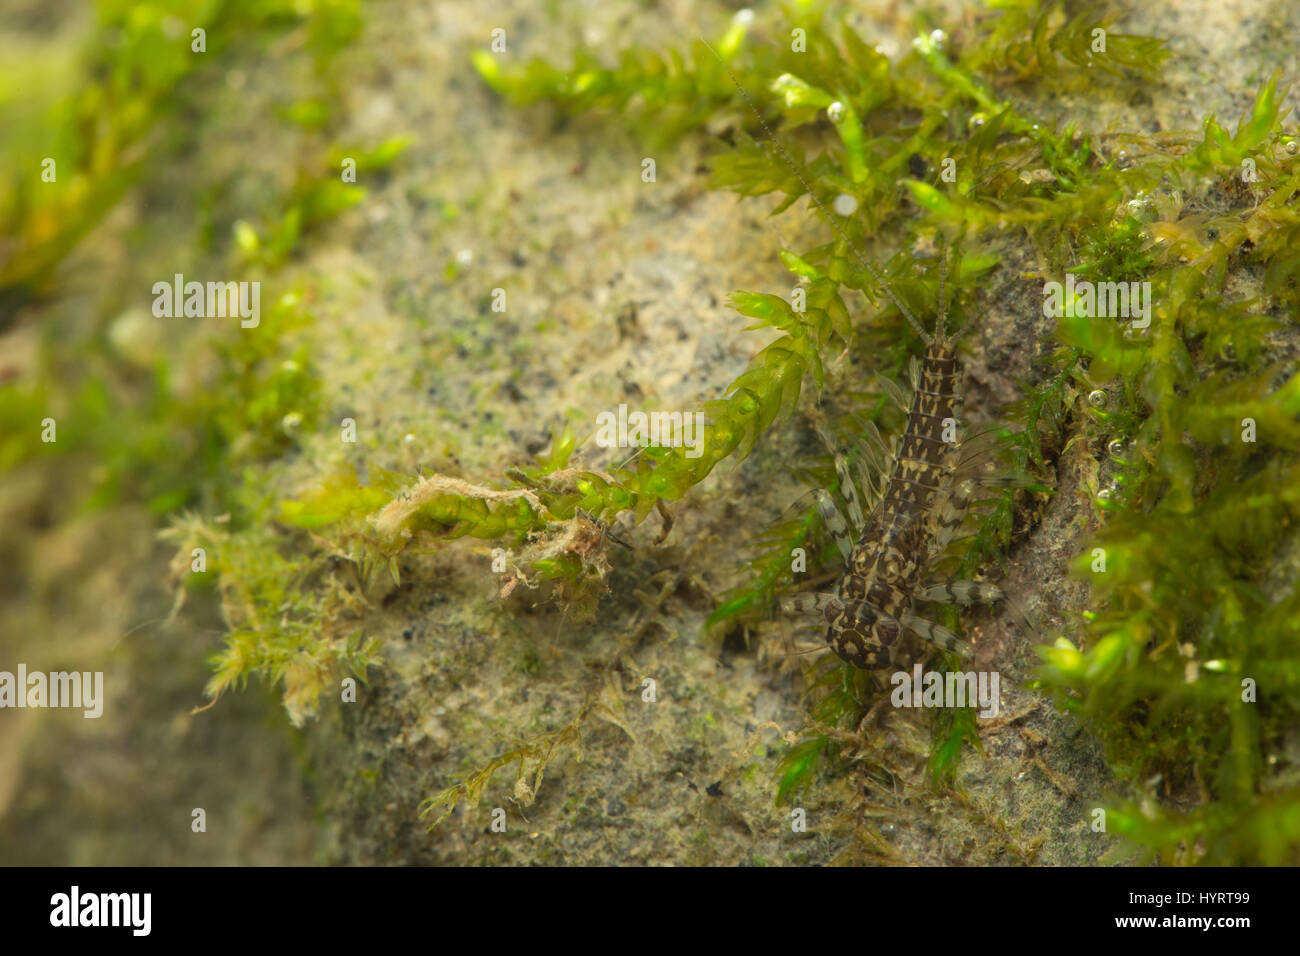 Flat-headed mayfly larvae (Heptagenia) Stock Photo